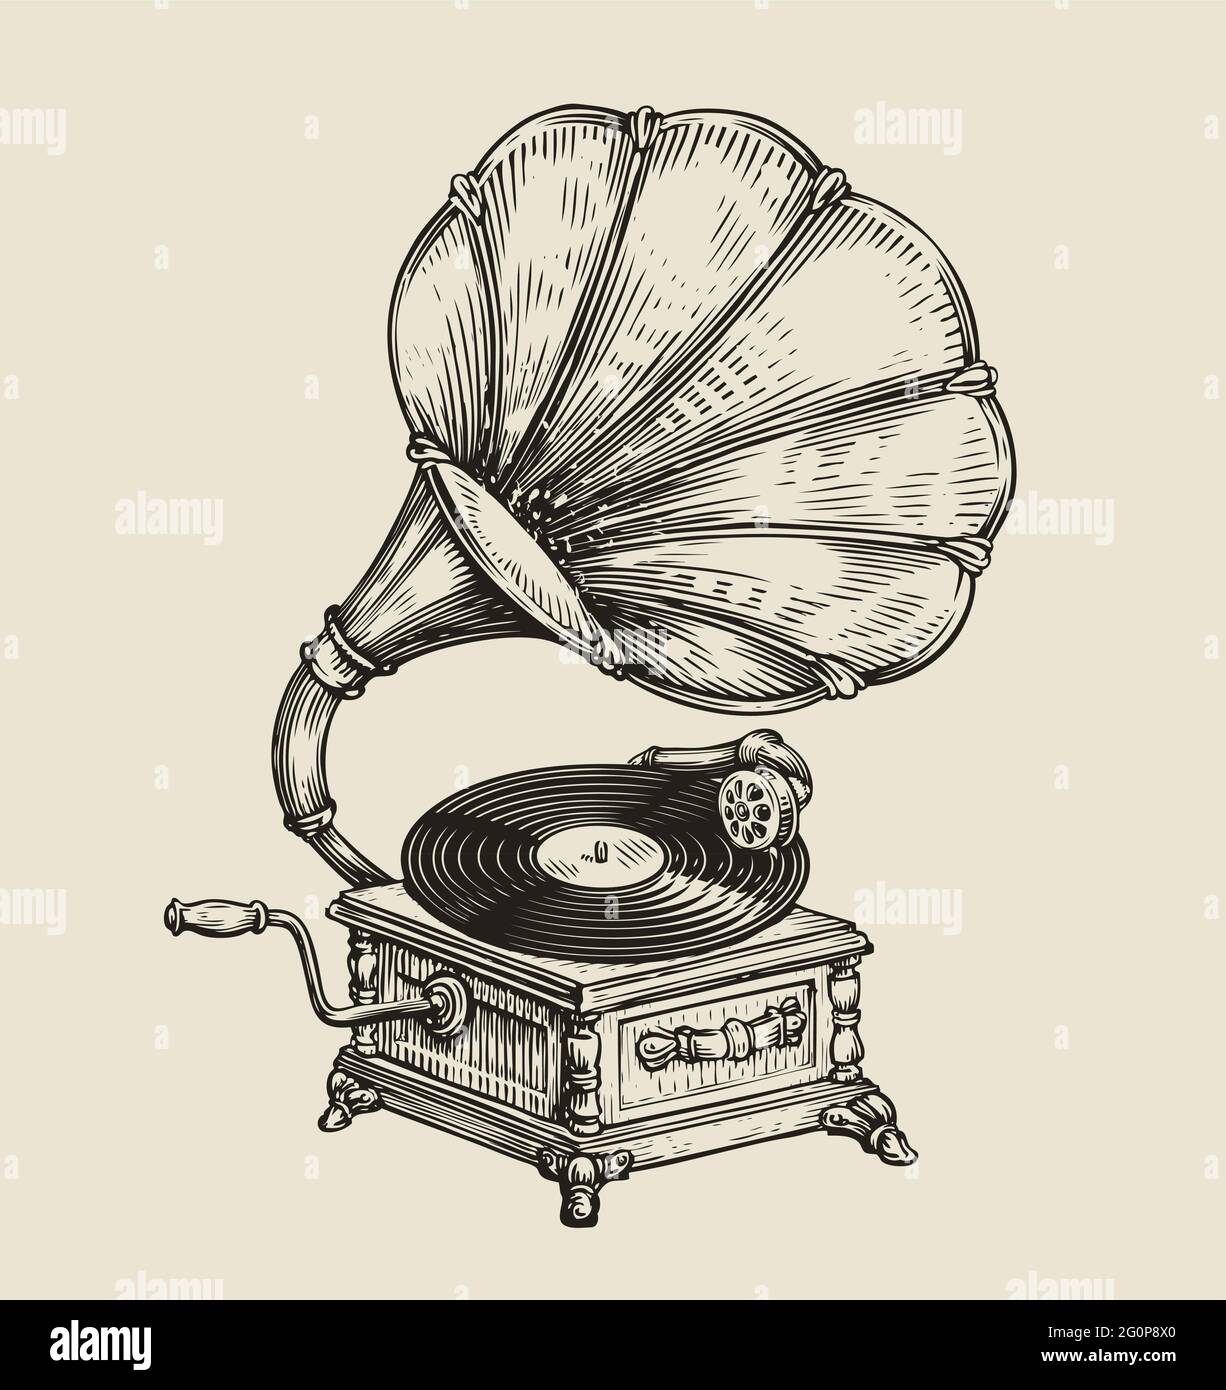 Musikplatte Grammophon in vintage graviert Stil. Handgezeichnete Skizzenvektordarstellung Stock Vektor